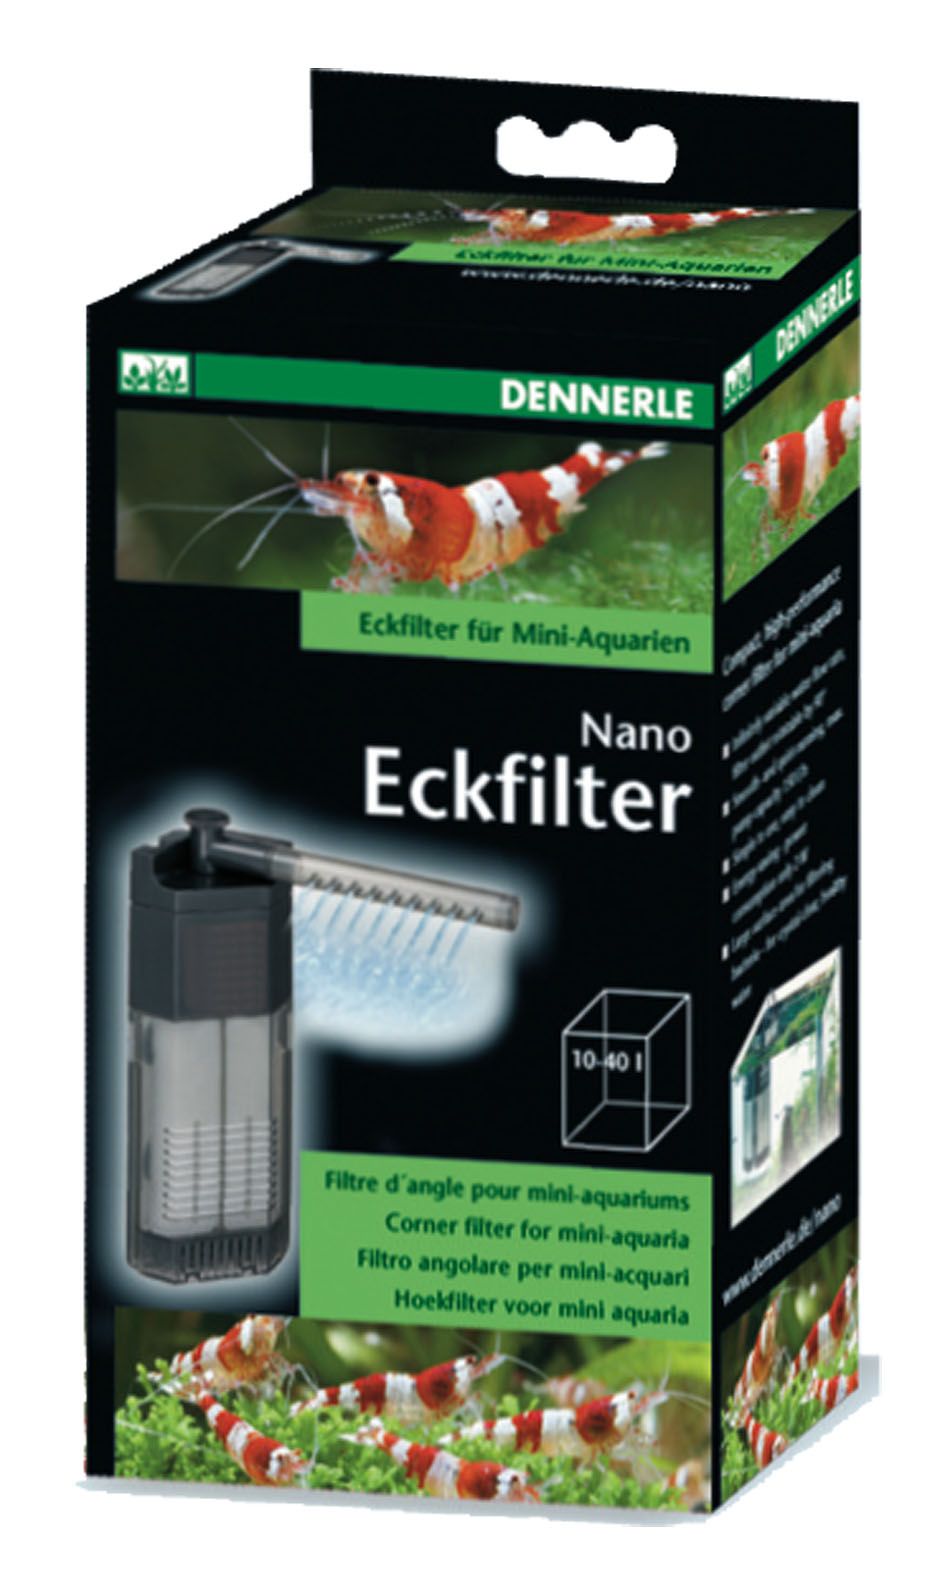 DENNERLE Nano Eckfilter XL Innenfilter Aquarium Filter 2x